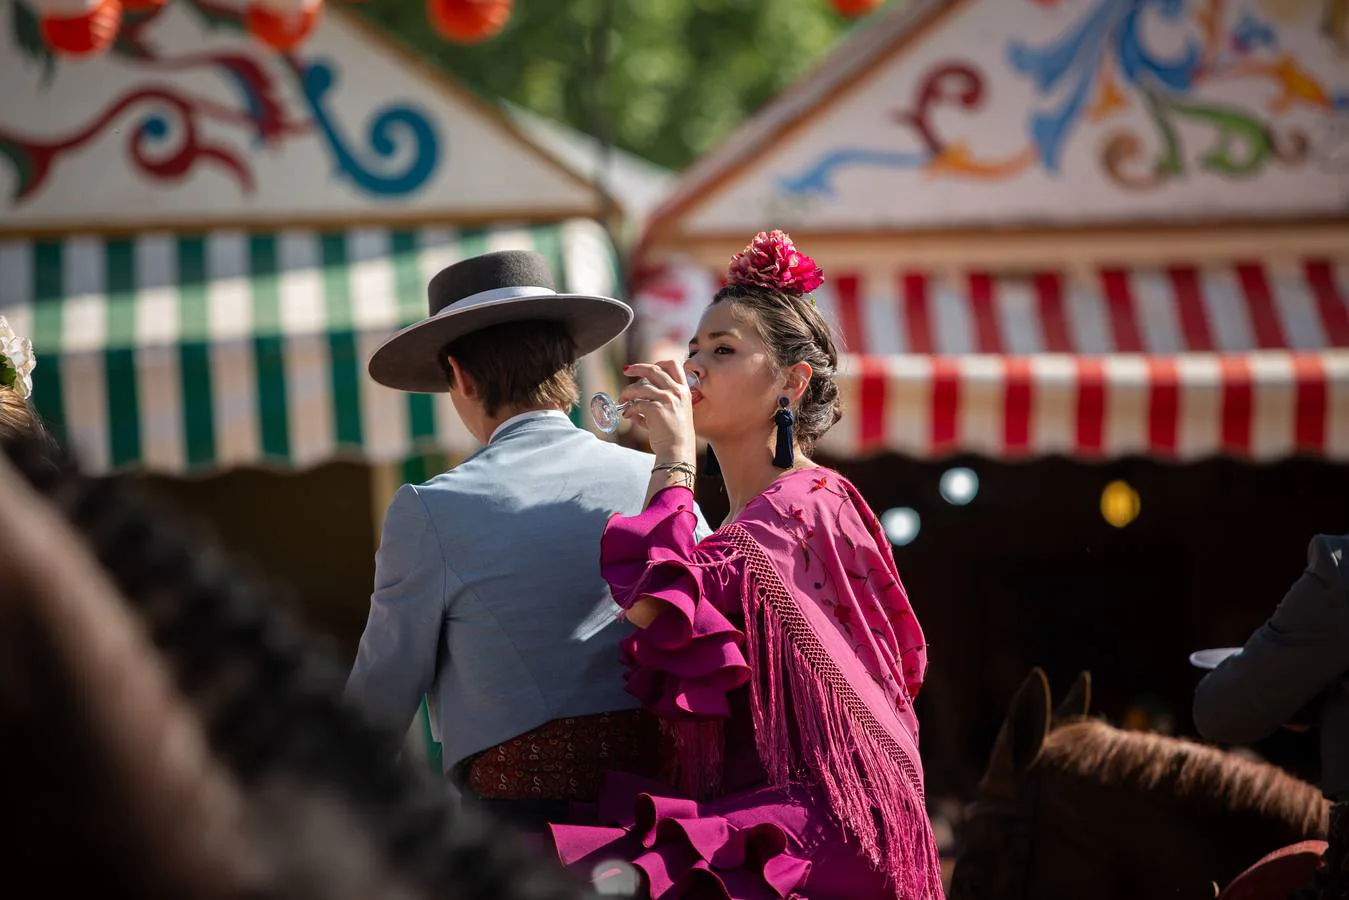 Feria de Sevilla: Vibrante y colorido domingo en el real